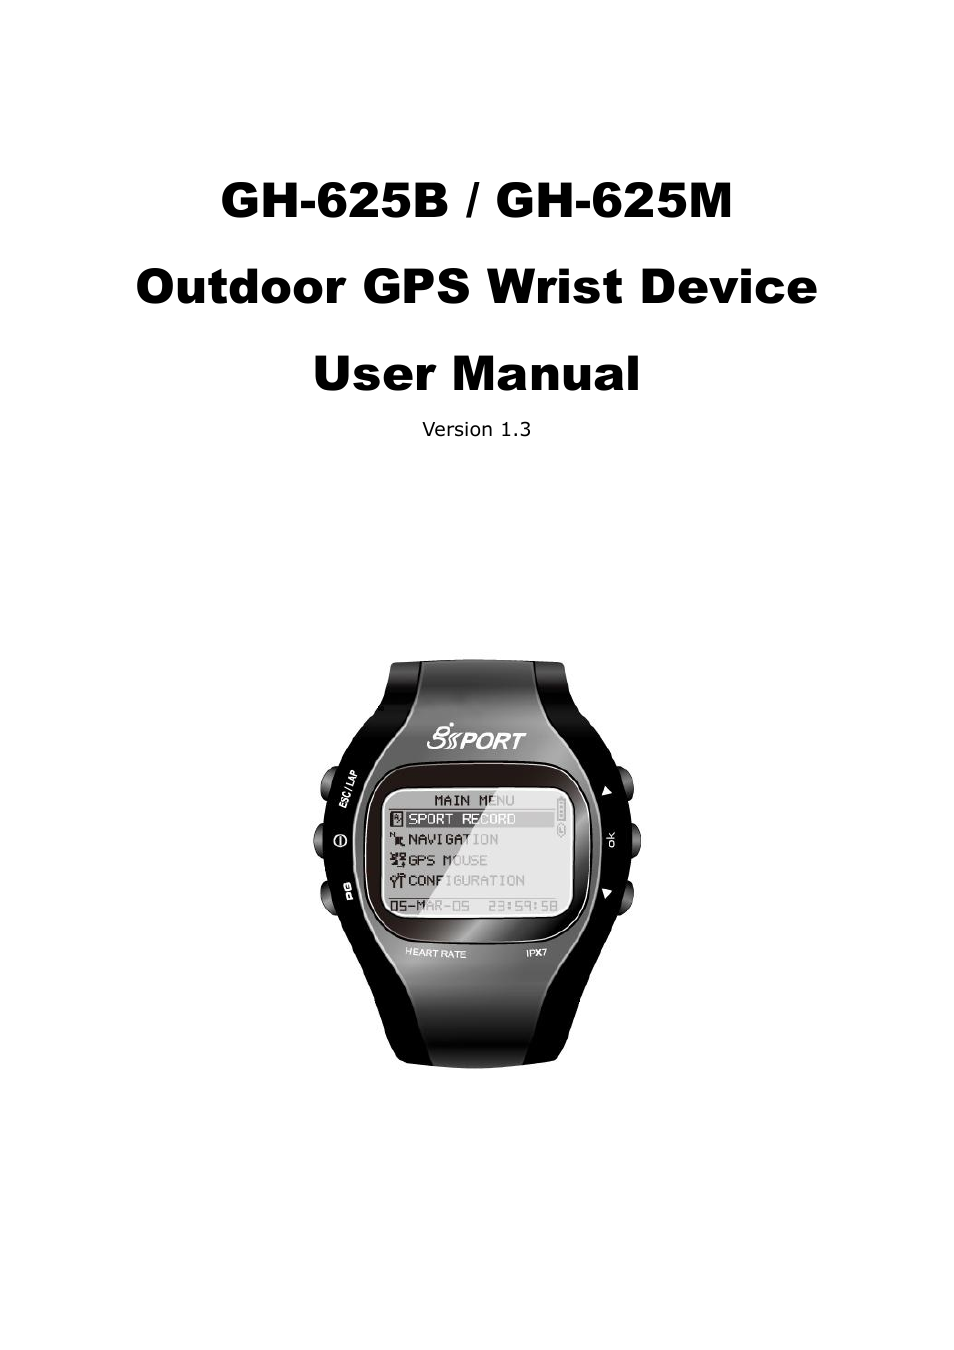 GH-625B User Manual